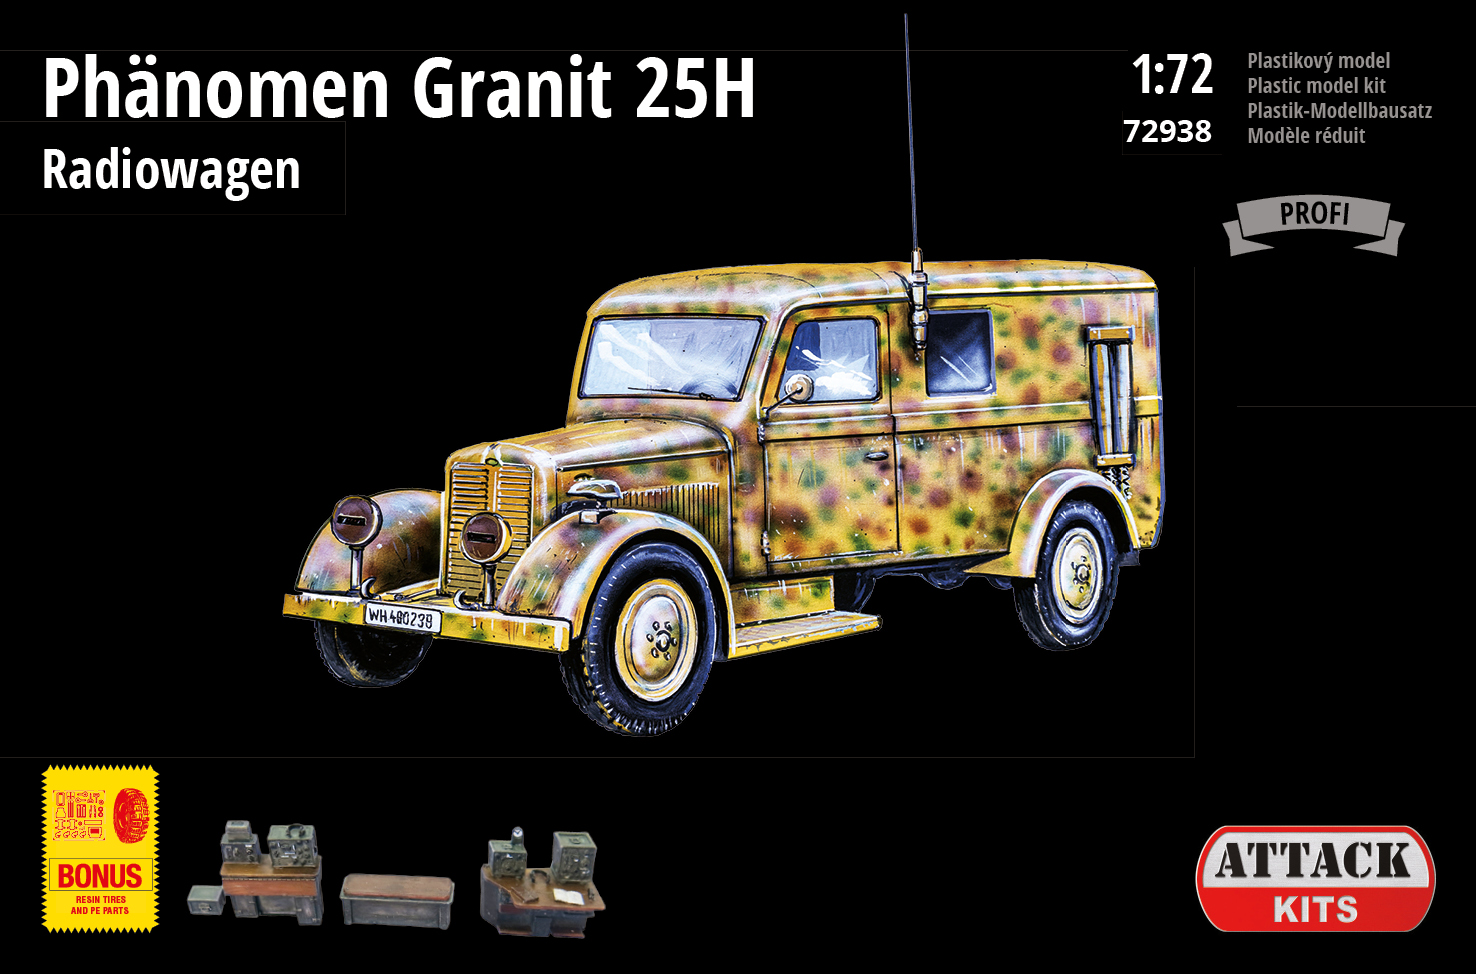 Phänomen Granit 25H Radiowagen